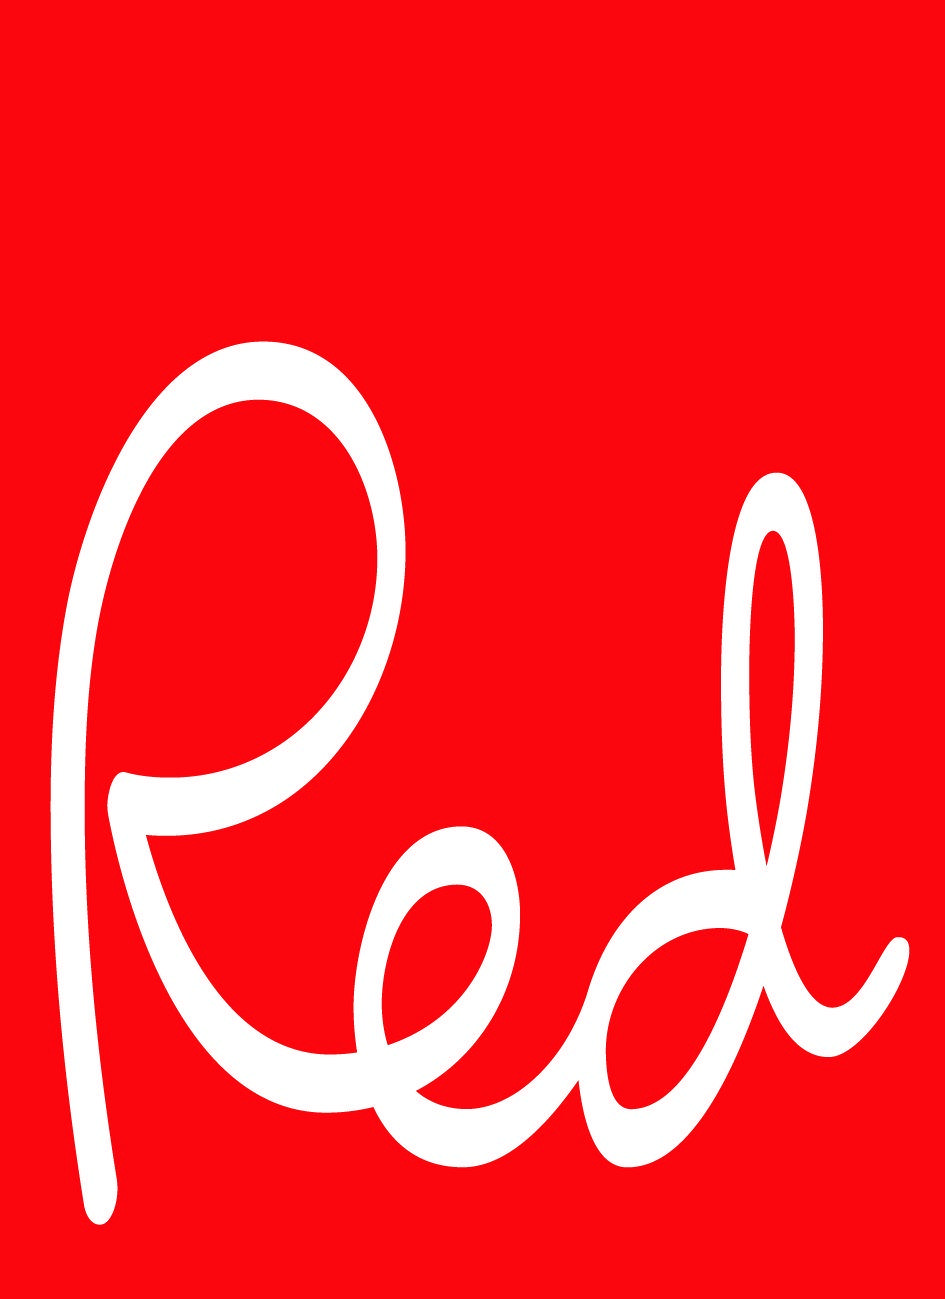 RedR Logo - Redr Logo